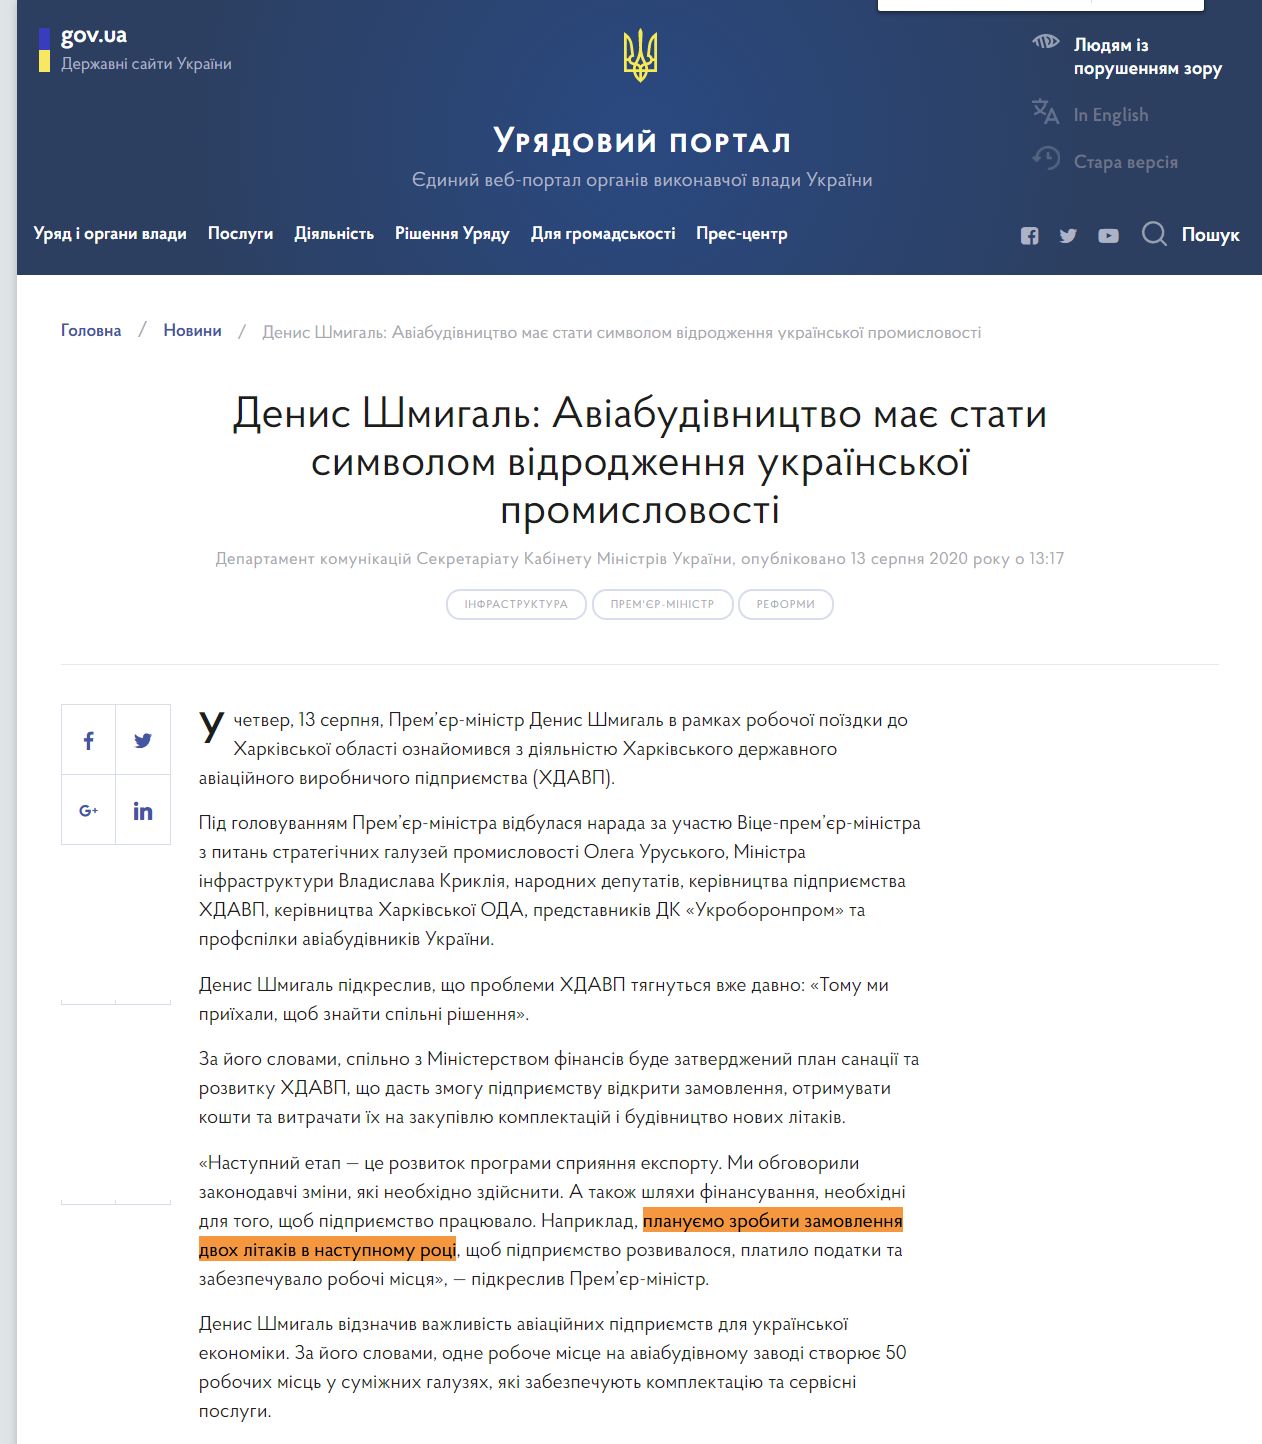 https://www.kmu.gov.ua/news/denis-shmigal-aviabudivnictvo-maye-stati-simvolom-vidrodzhennya-ukrayinskoyi-promislovosti